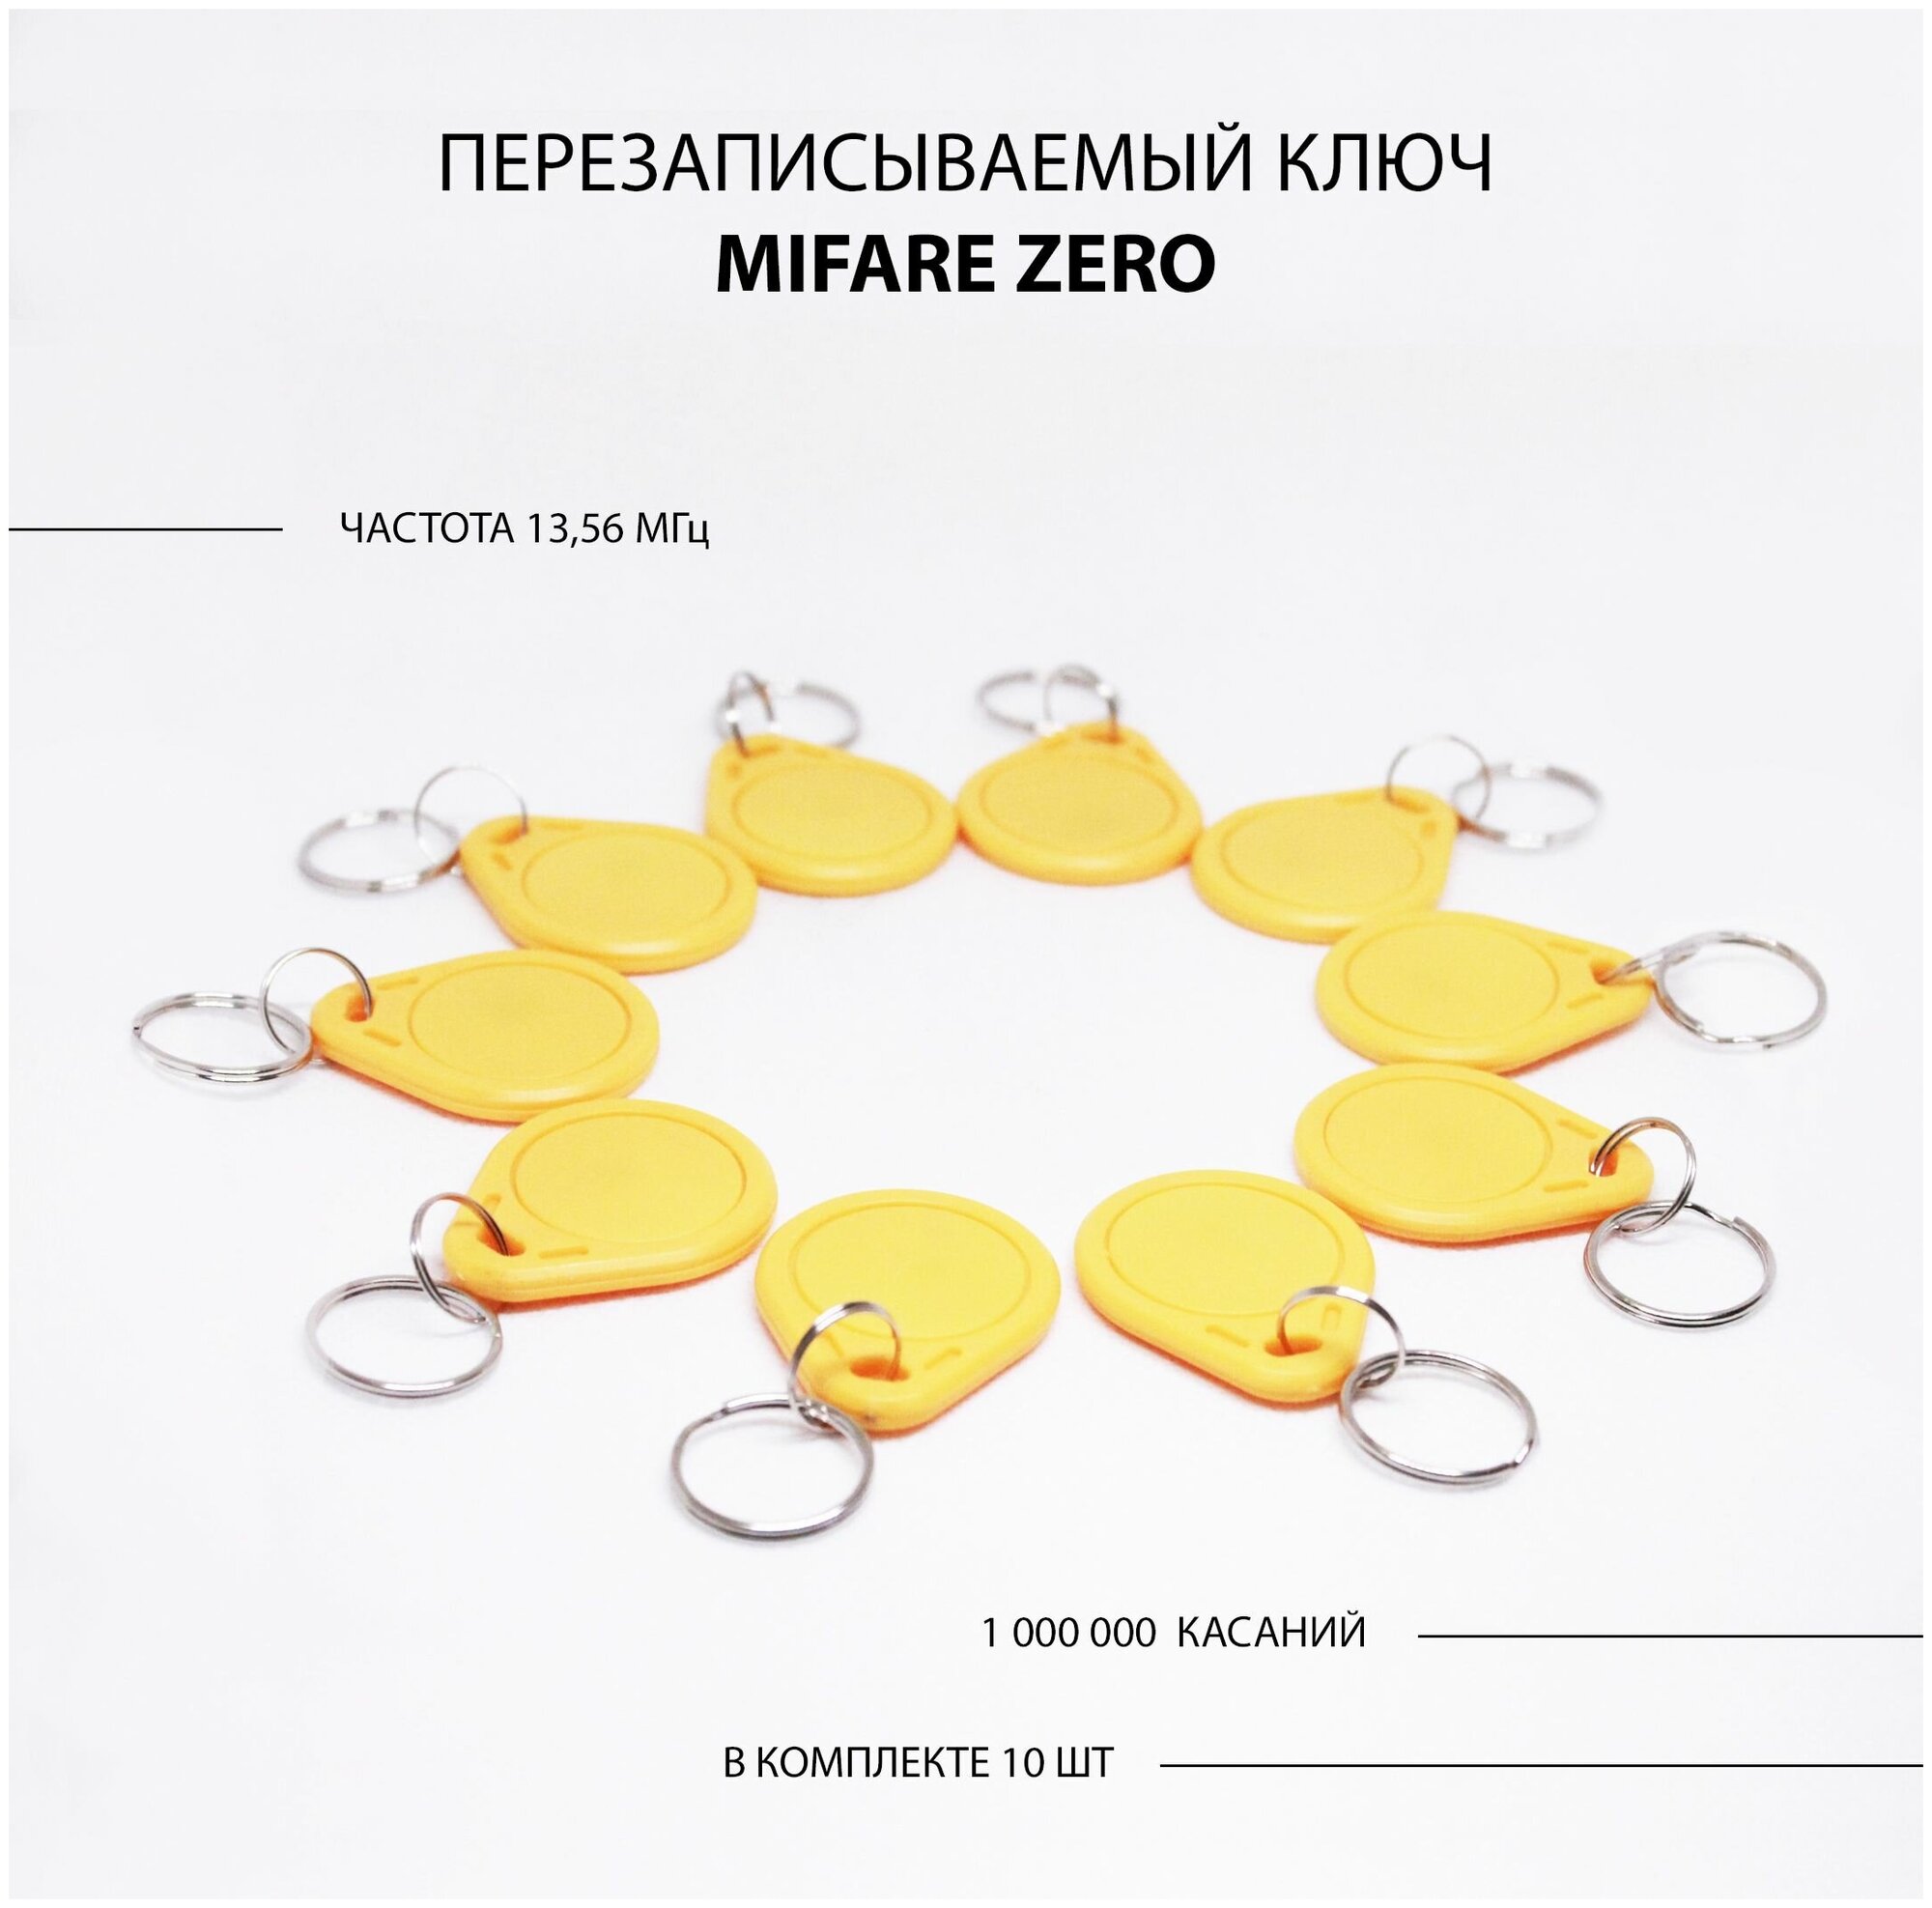 Ключ для домофона Mifare Zero 10шт перезаписываемый . Частота 13,56 МГц Желтый цвет